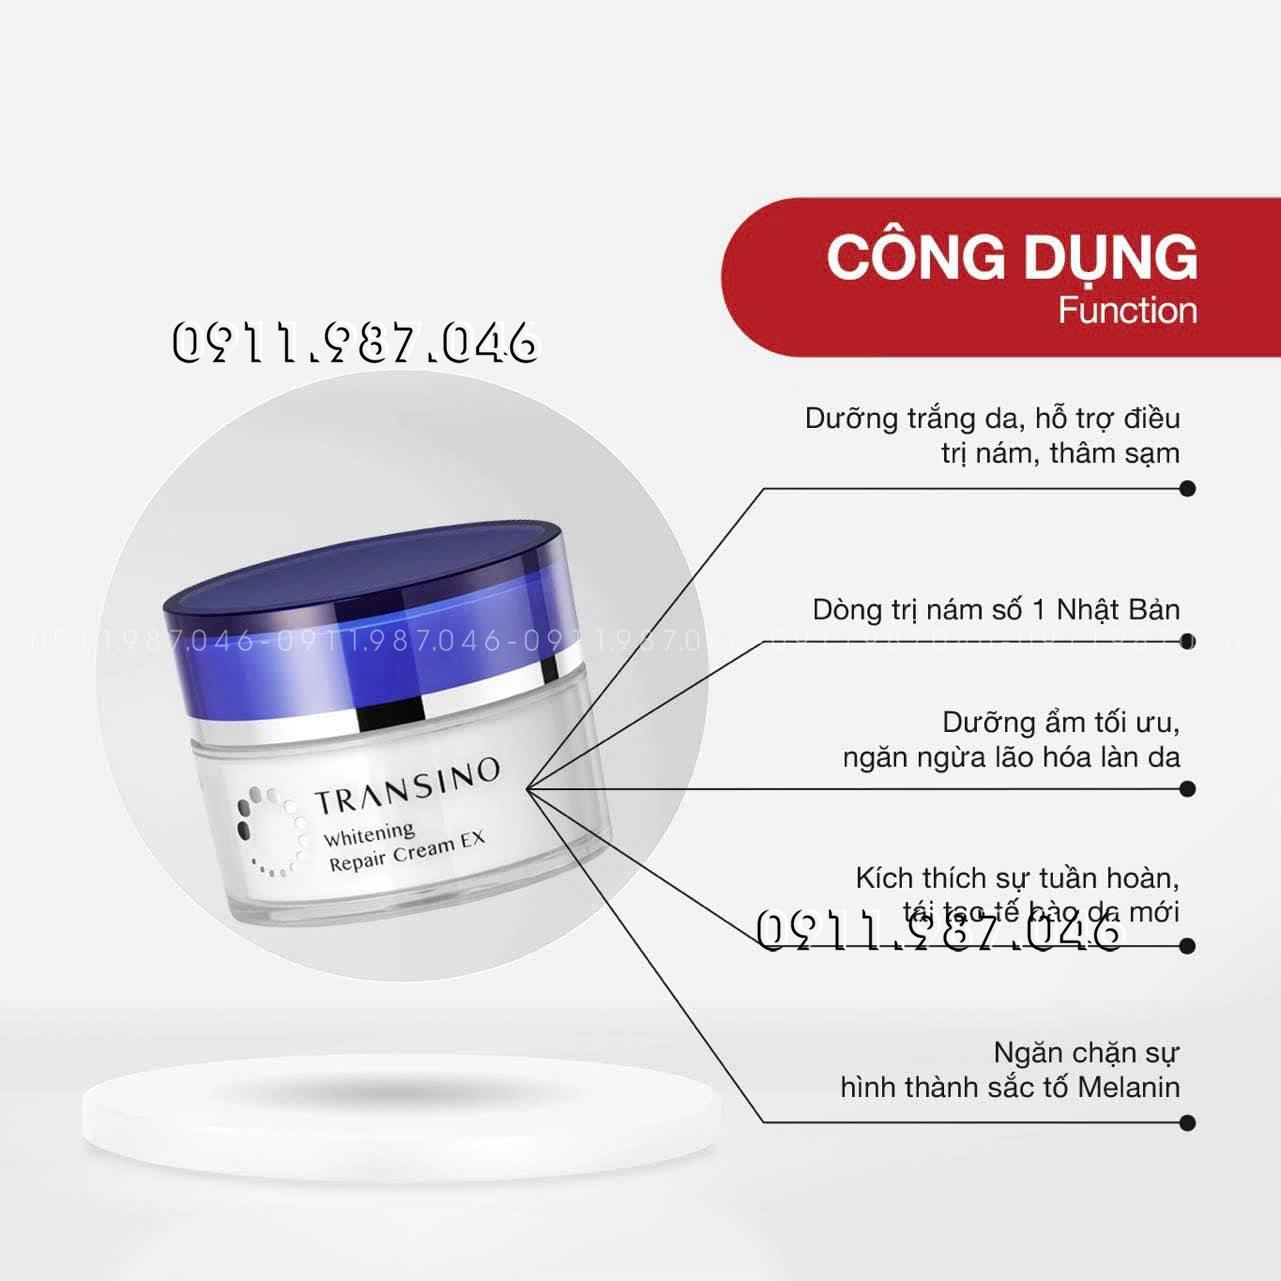 Kem dưỡng trắng da Transino Whitening Repair Cream EX chính hãng - PN158457